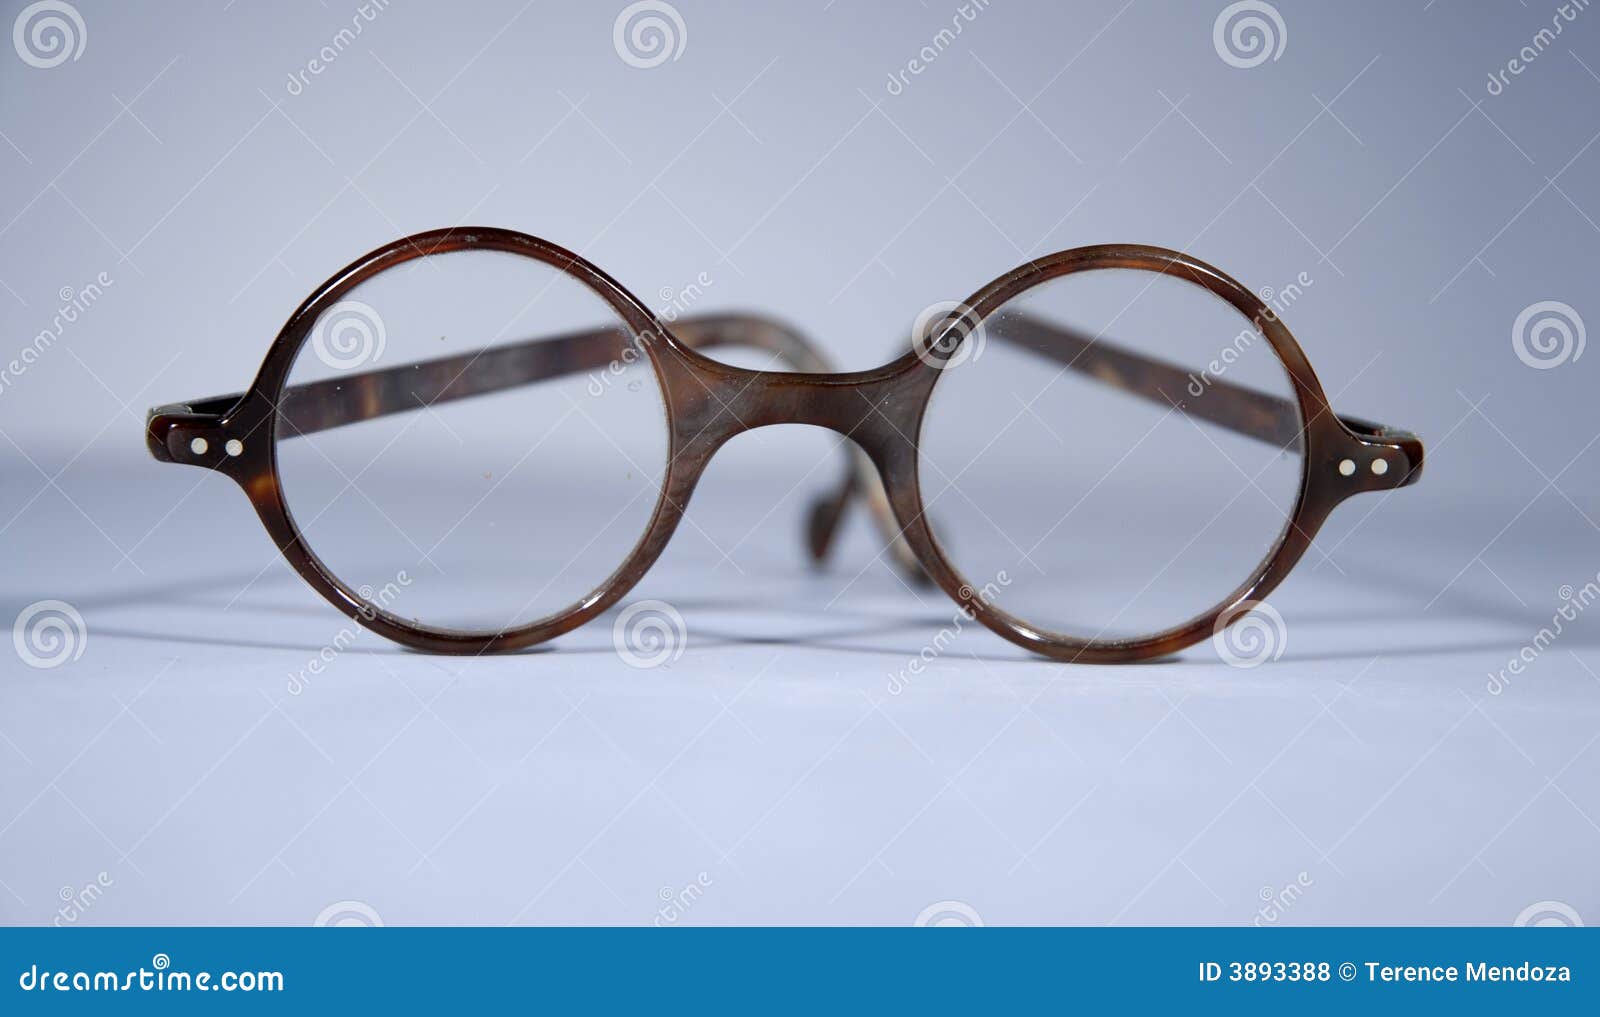 antique round spectacles